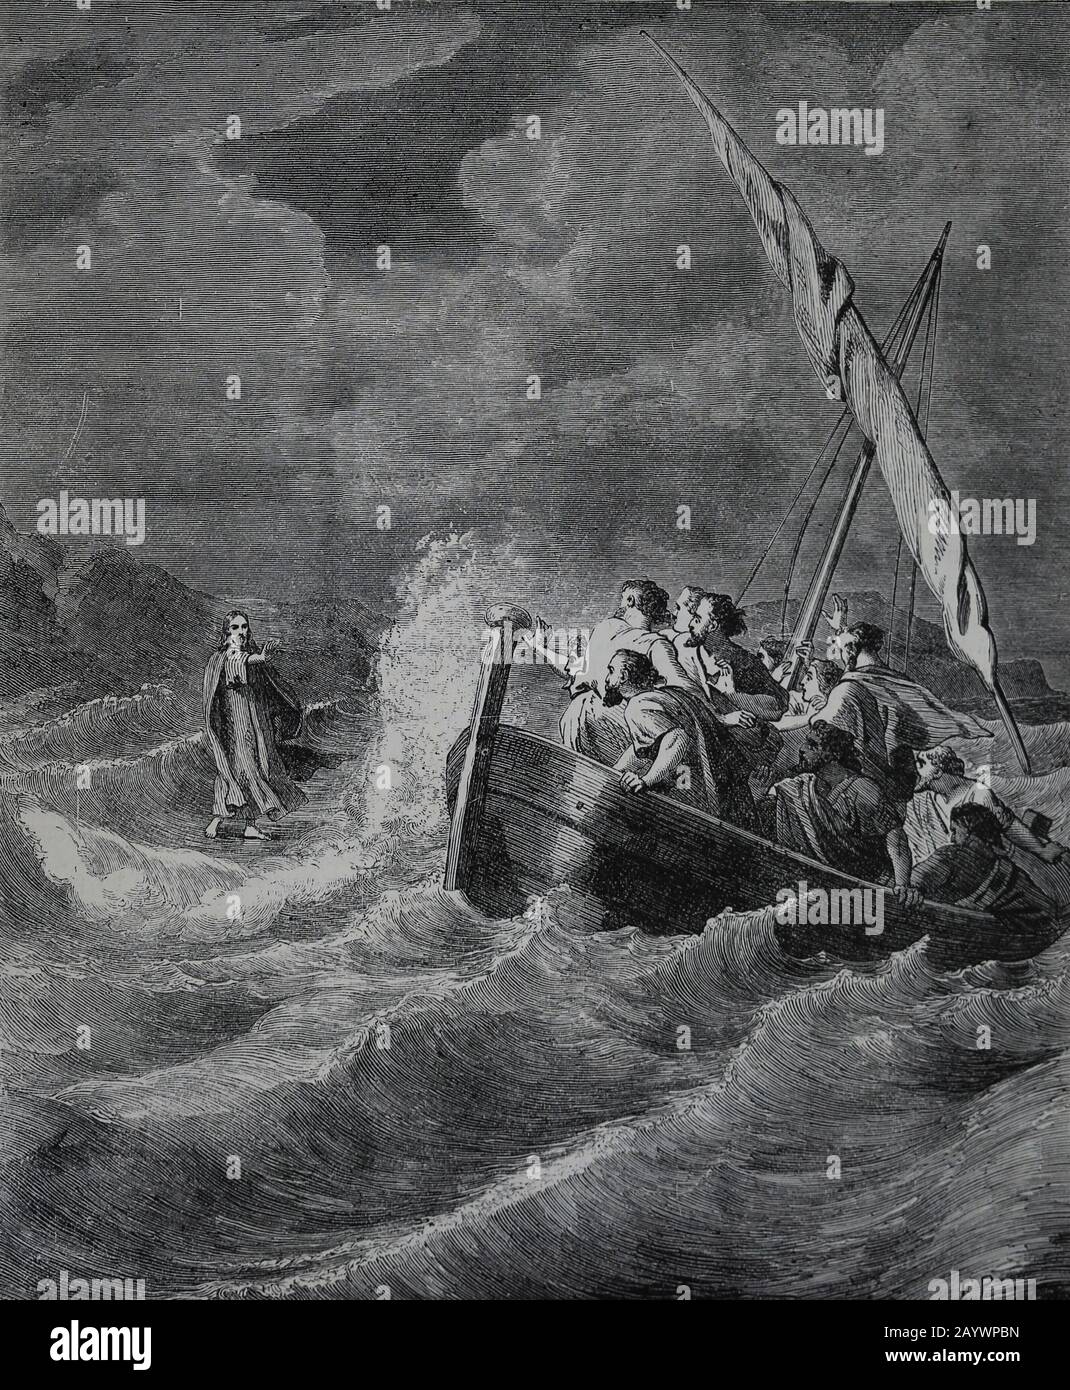 Neues Testamente. Jesus, der auf dem Wasser spazieren ging. Gravur, 19. Jahrhundert. Matthäus-Evangelium. Stockfoto